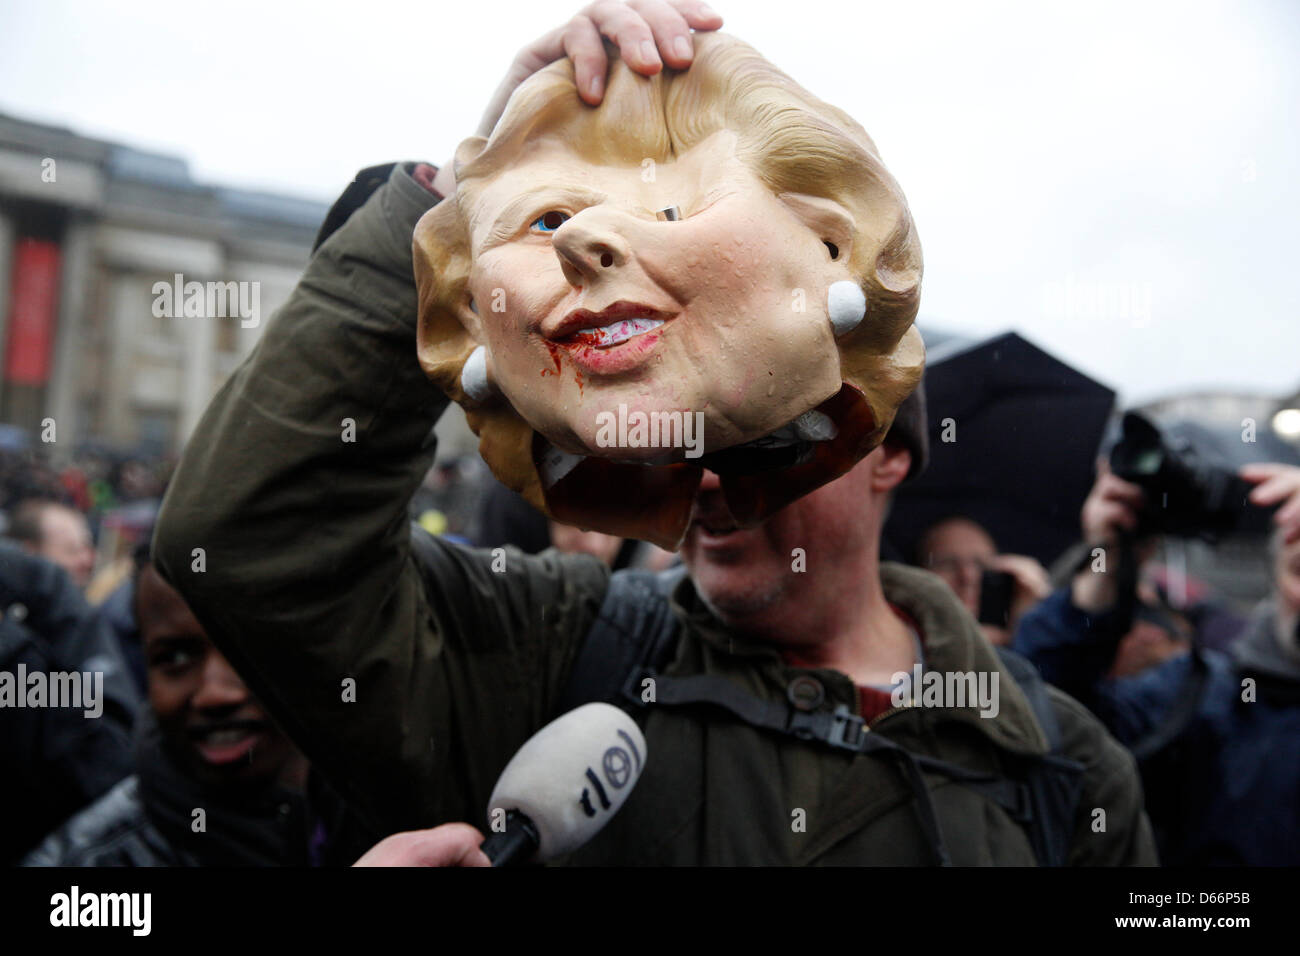 LONDON fand 13. April Anti Thatcher Partei am Trafalgar Square im Zentrum von London mit Hunderten von Demonstranten feiern ihren Tod. Demonstranten hielten Masken mit Margaret Thatcher sowie selbstgemachten Figuren von ihr. Stockfoto